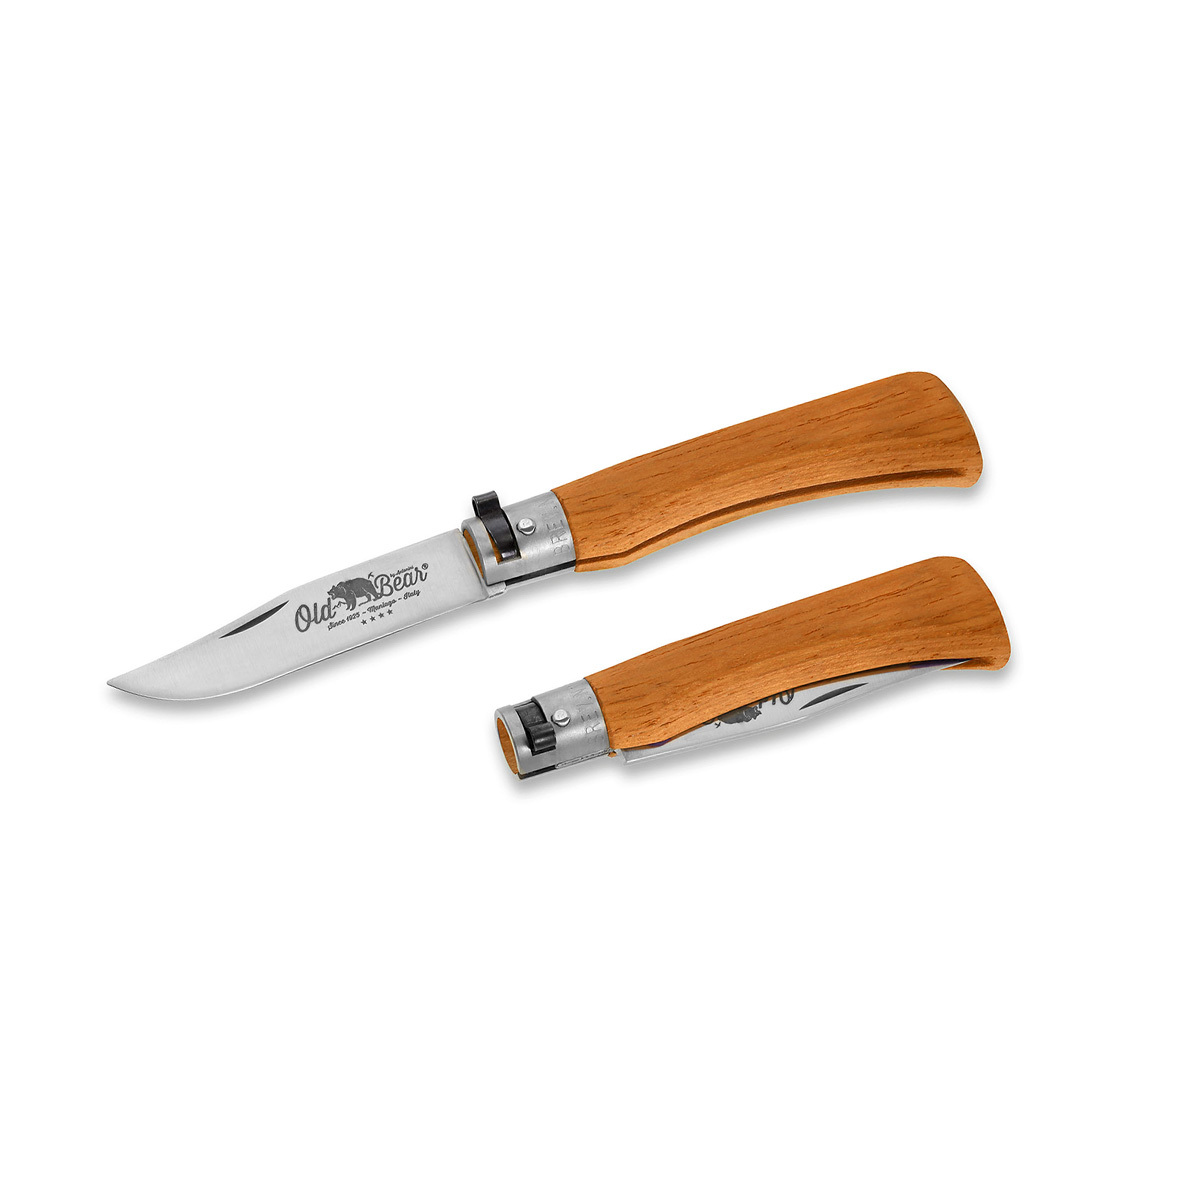 Складной нож Antonini Old Bear® Full Color XL, сталь 420, рукоять оранжевая стабилизированная древесина от Ножиков